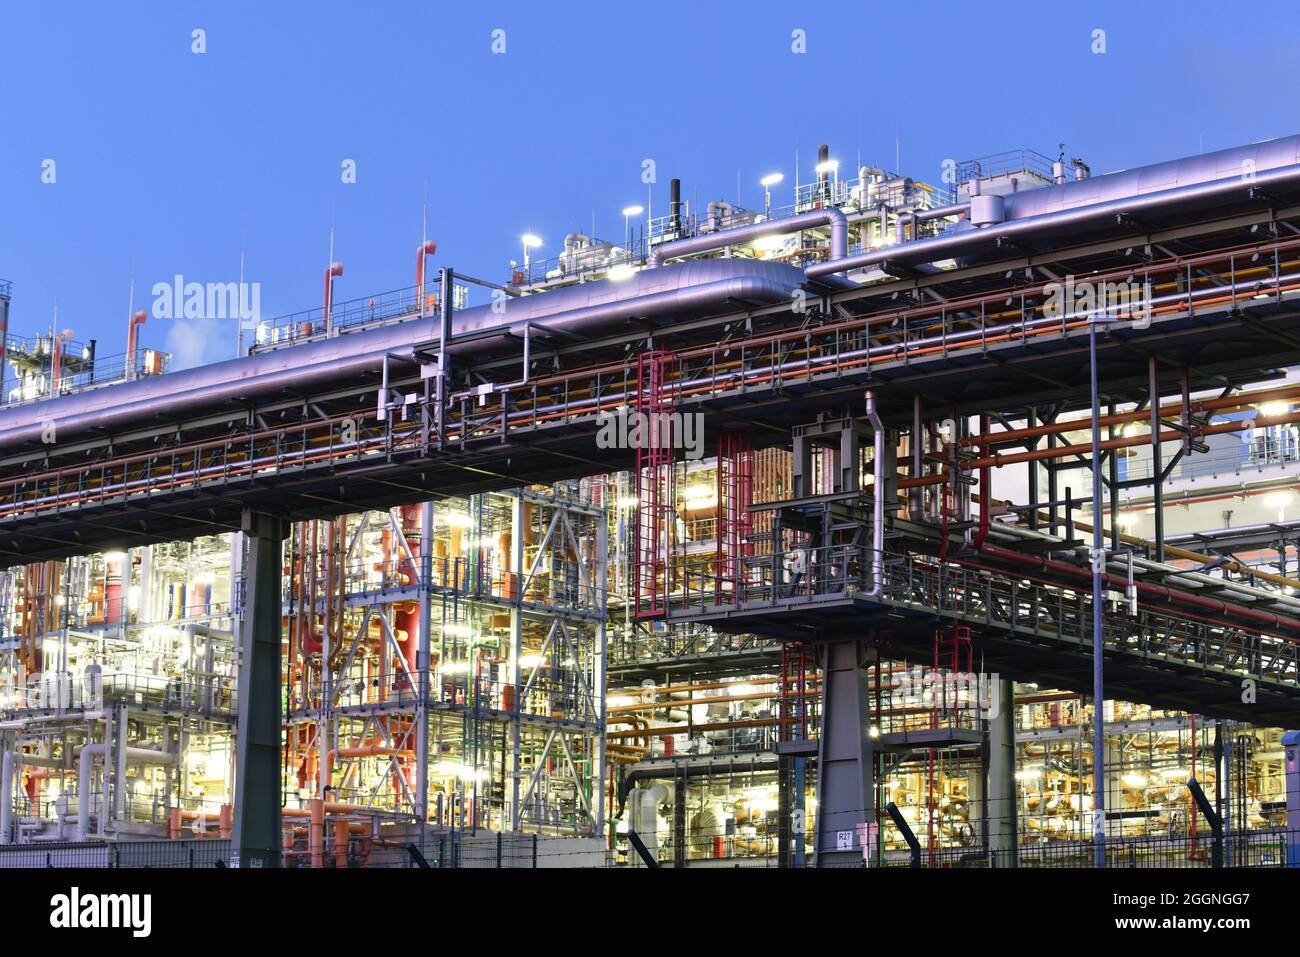 Chemische Fabrik in der Nacht mit Gebäuden, Rohrleitungen und Beleuchtung - Industrieanlage Stockfoto